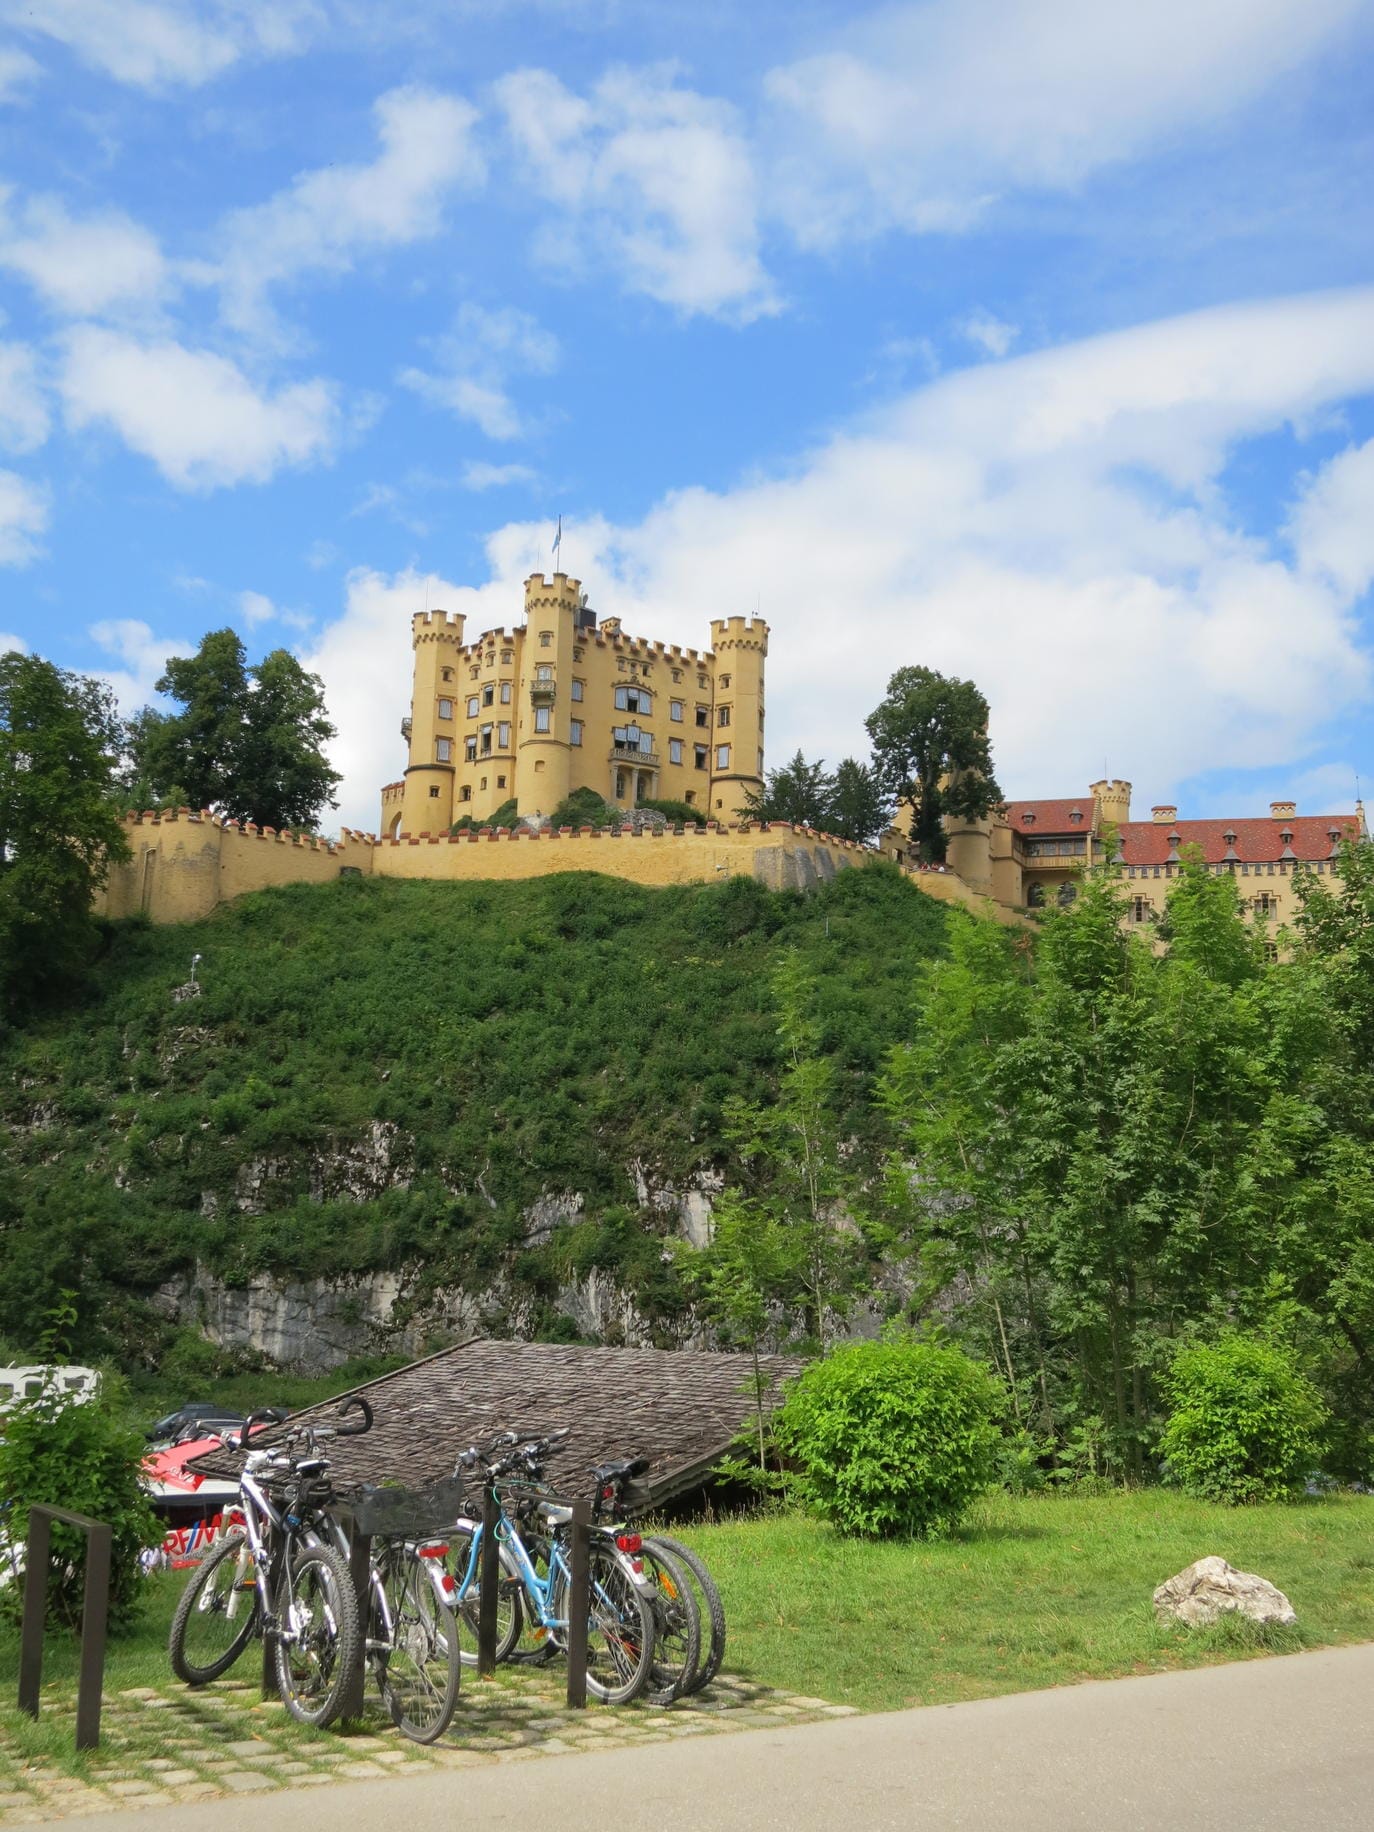 Das Schloss Hohenschwangau liegt direkt gegenüber von Schloss Neuschwanstein bei Füssen in Bayern und bietet einzigartige Blicke.